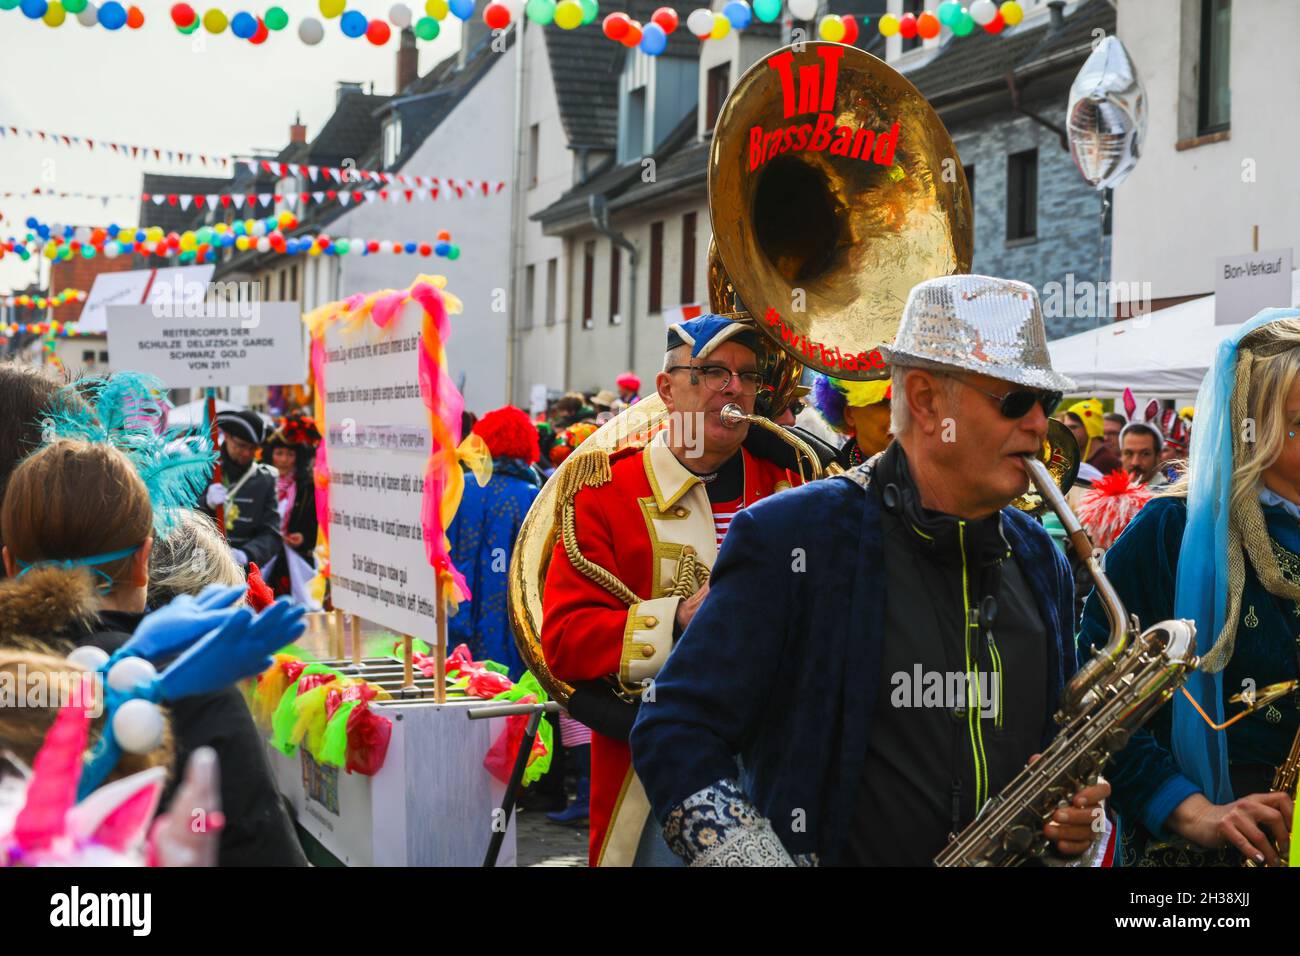 Colonia, Germania - 2 marzo 2019 Funny Street musicisti in abiti colorati che celebrano il carnevale. Foto Stock